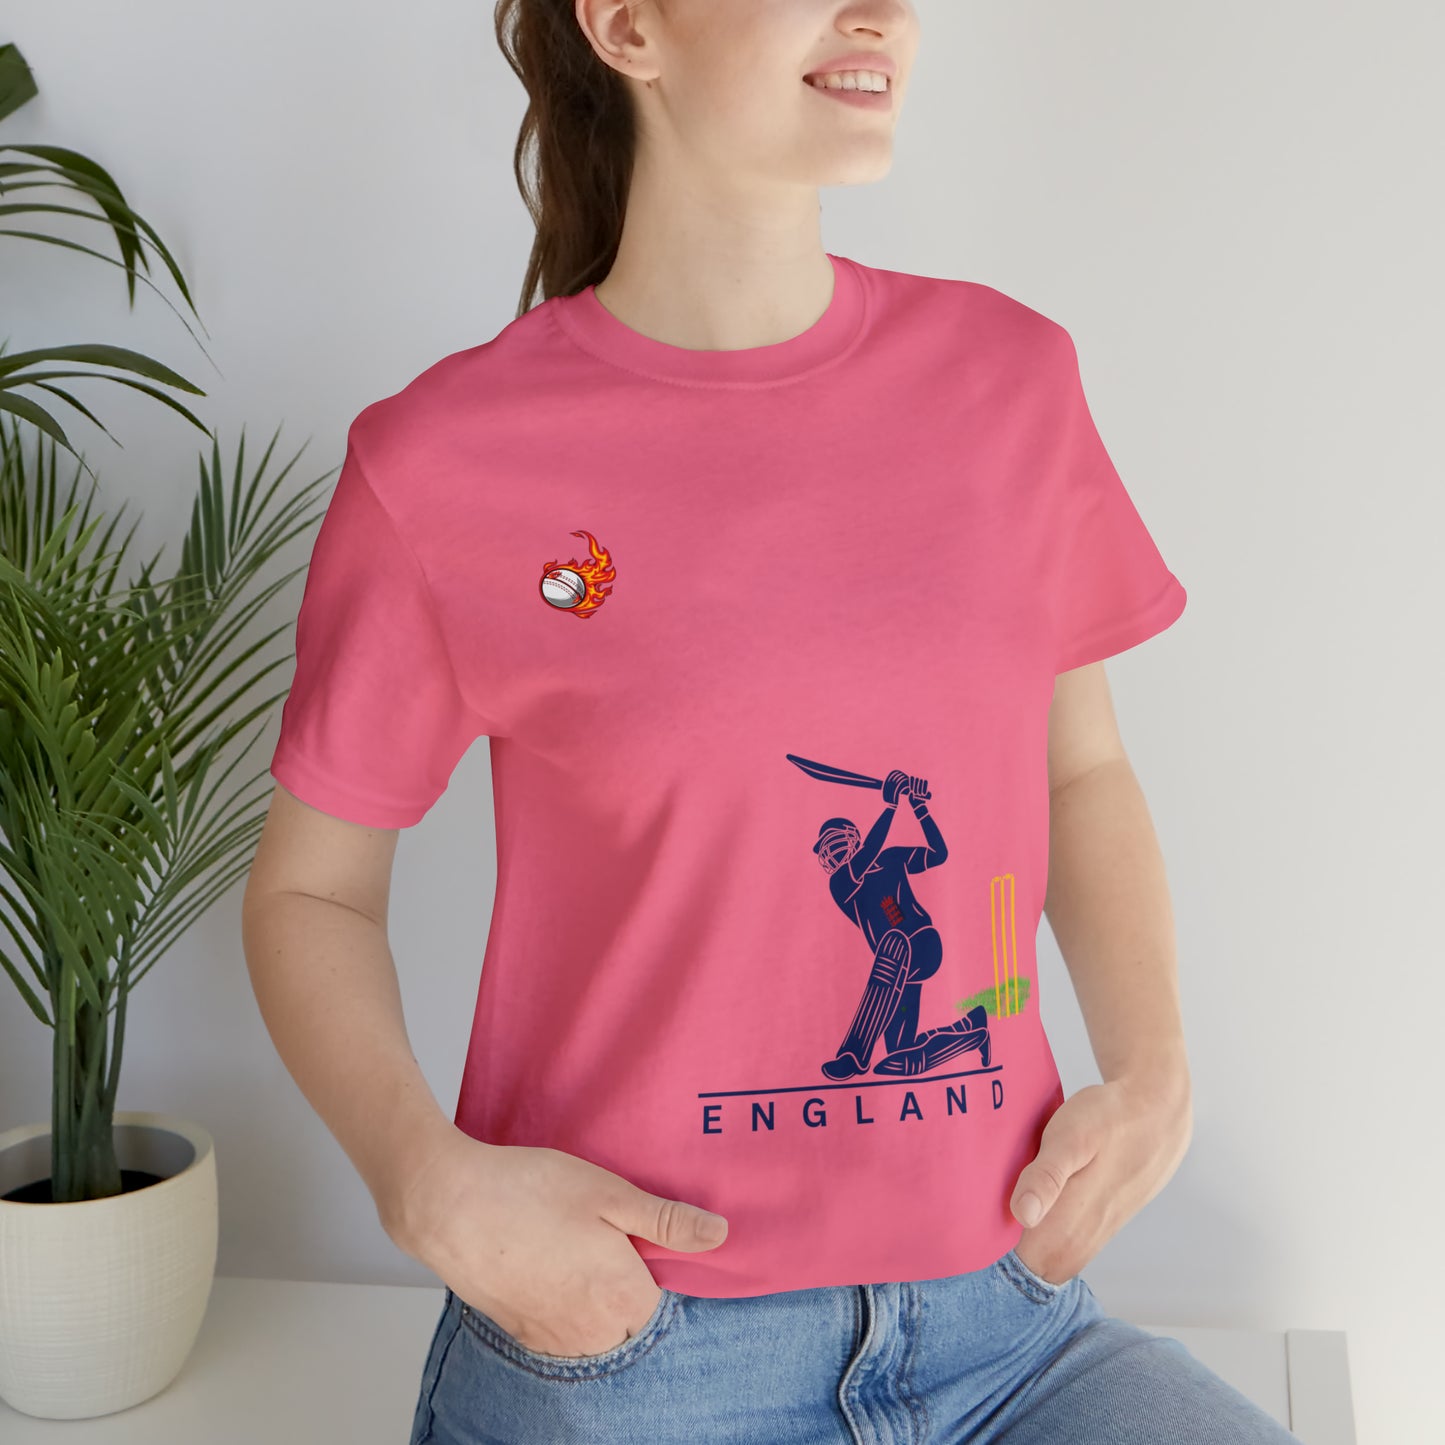 Cricket | 000129 | Unisex-Kurzarm-T-Shirt aus Jersey 